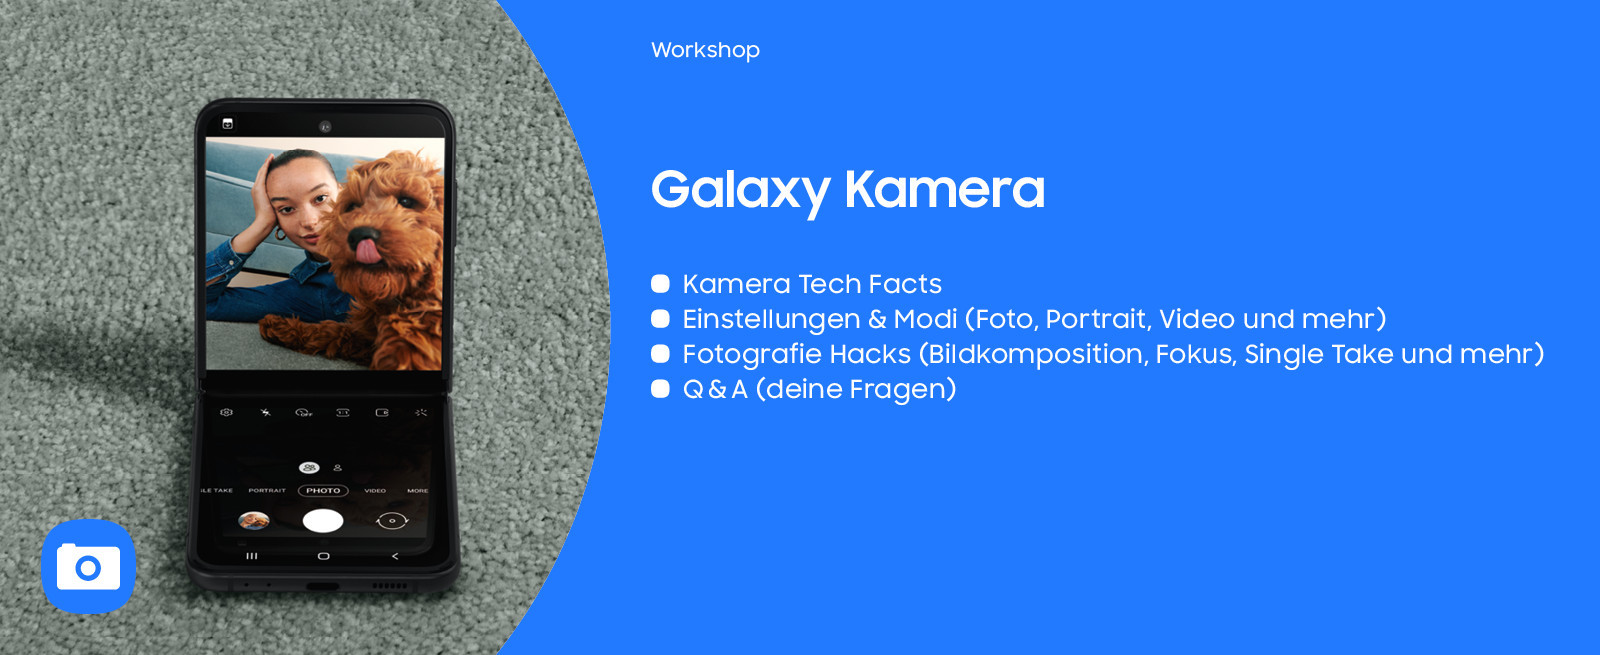 Galaxy-Kamera-Workshop-Kamera